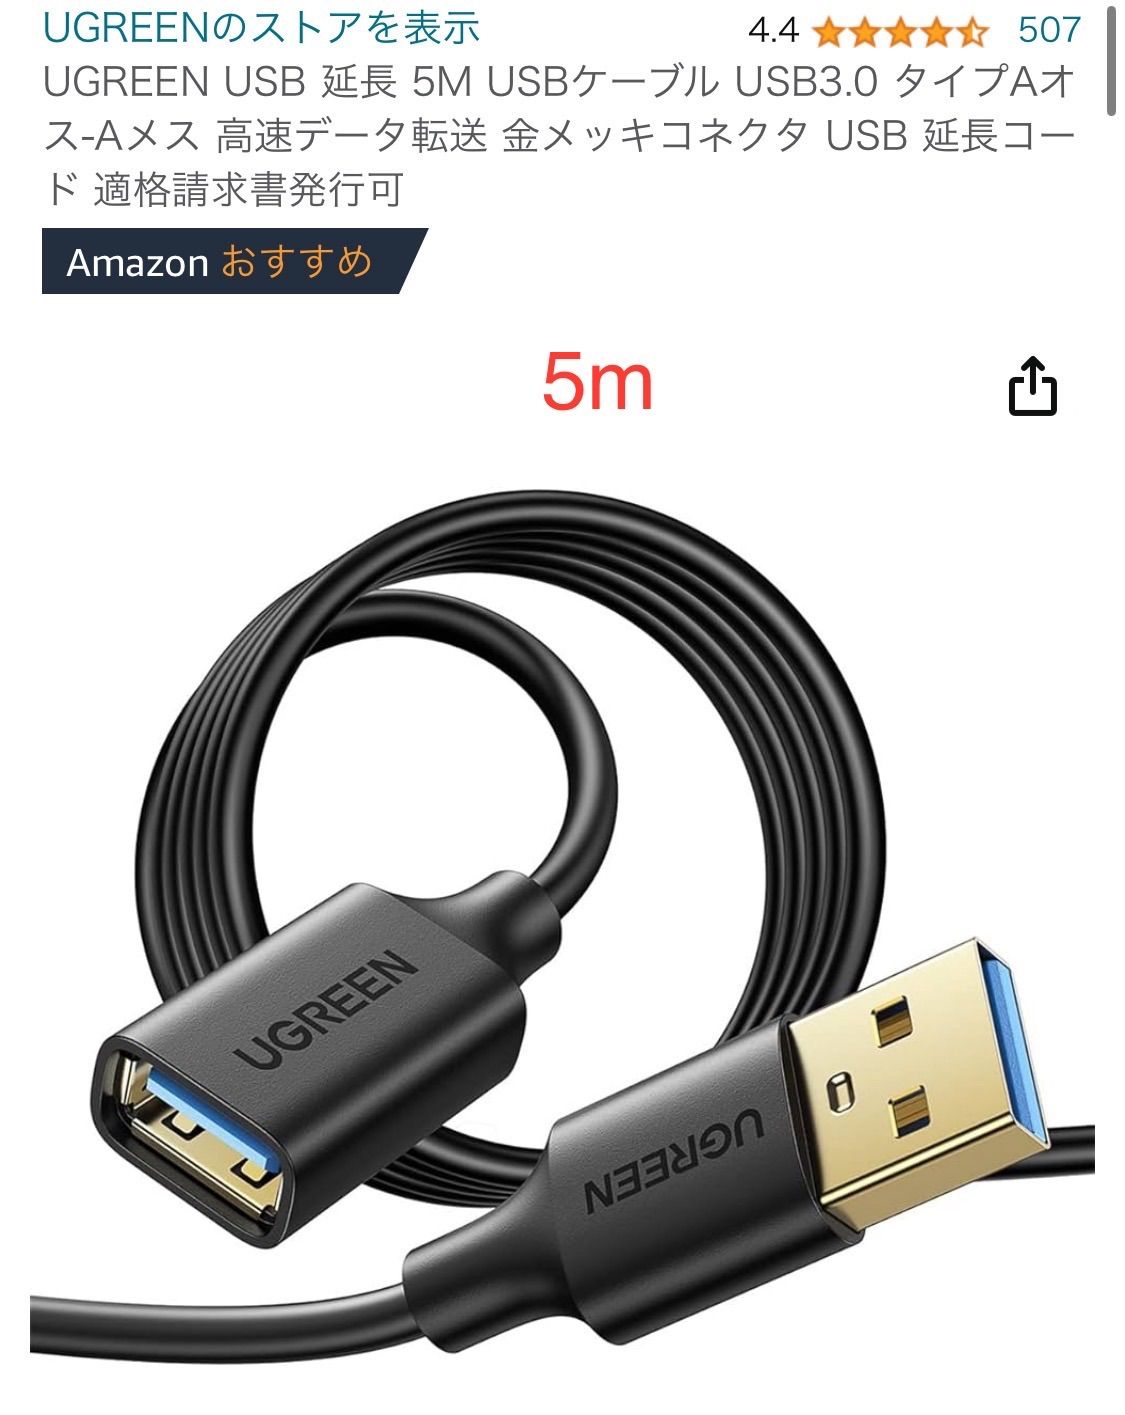 5m UGREEN USB 延長 USBケーブル USB3.0 タイプAオス-Aメス 高速データ転送 金メッキコネクタ - メルカリ